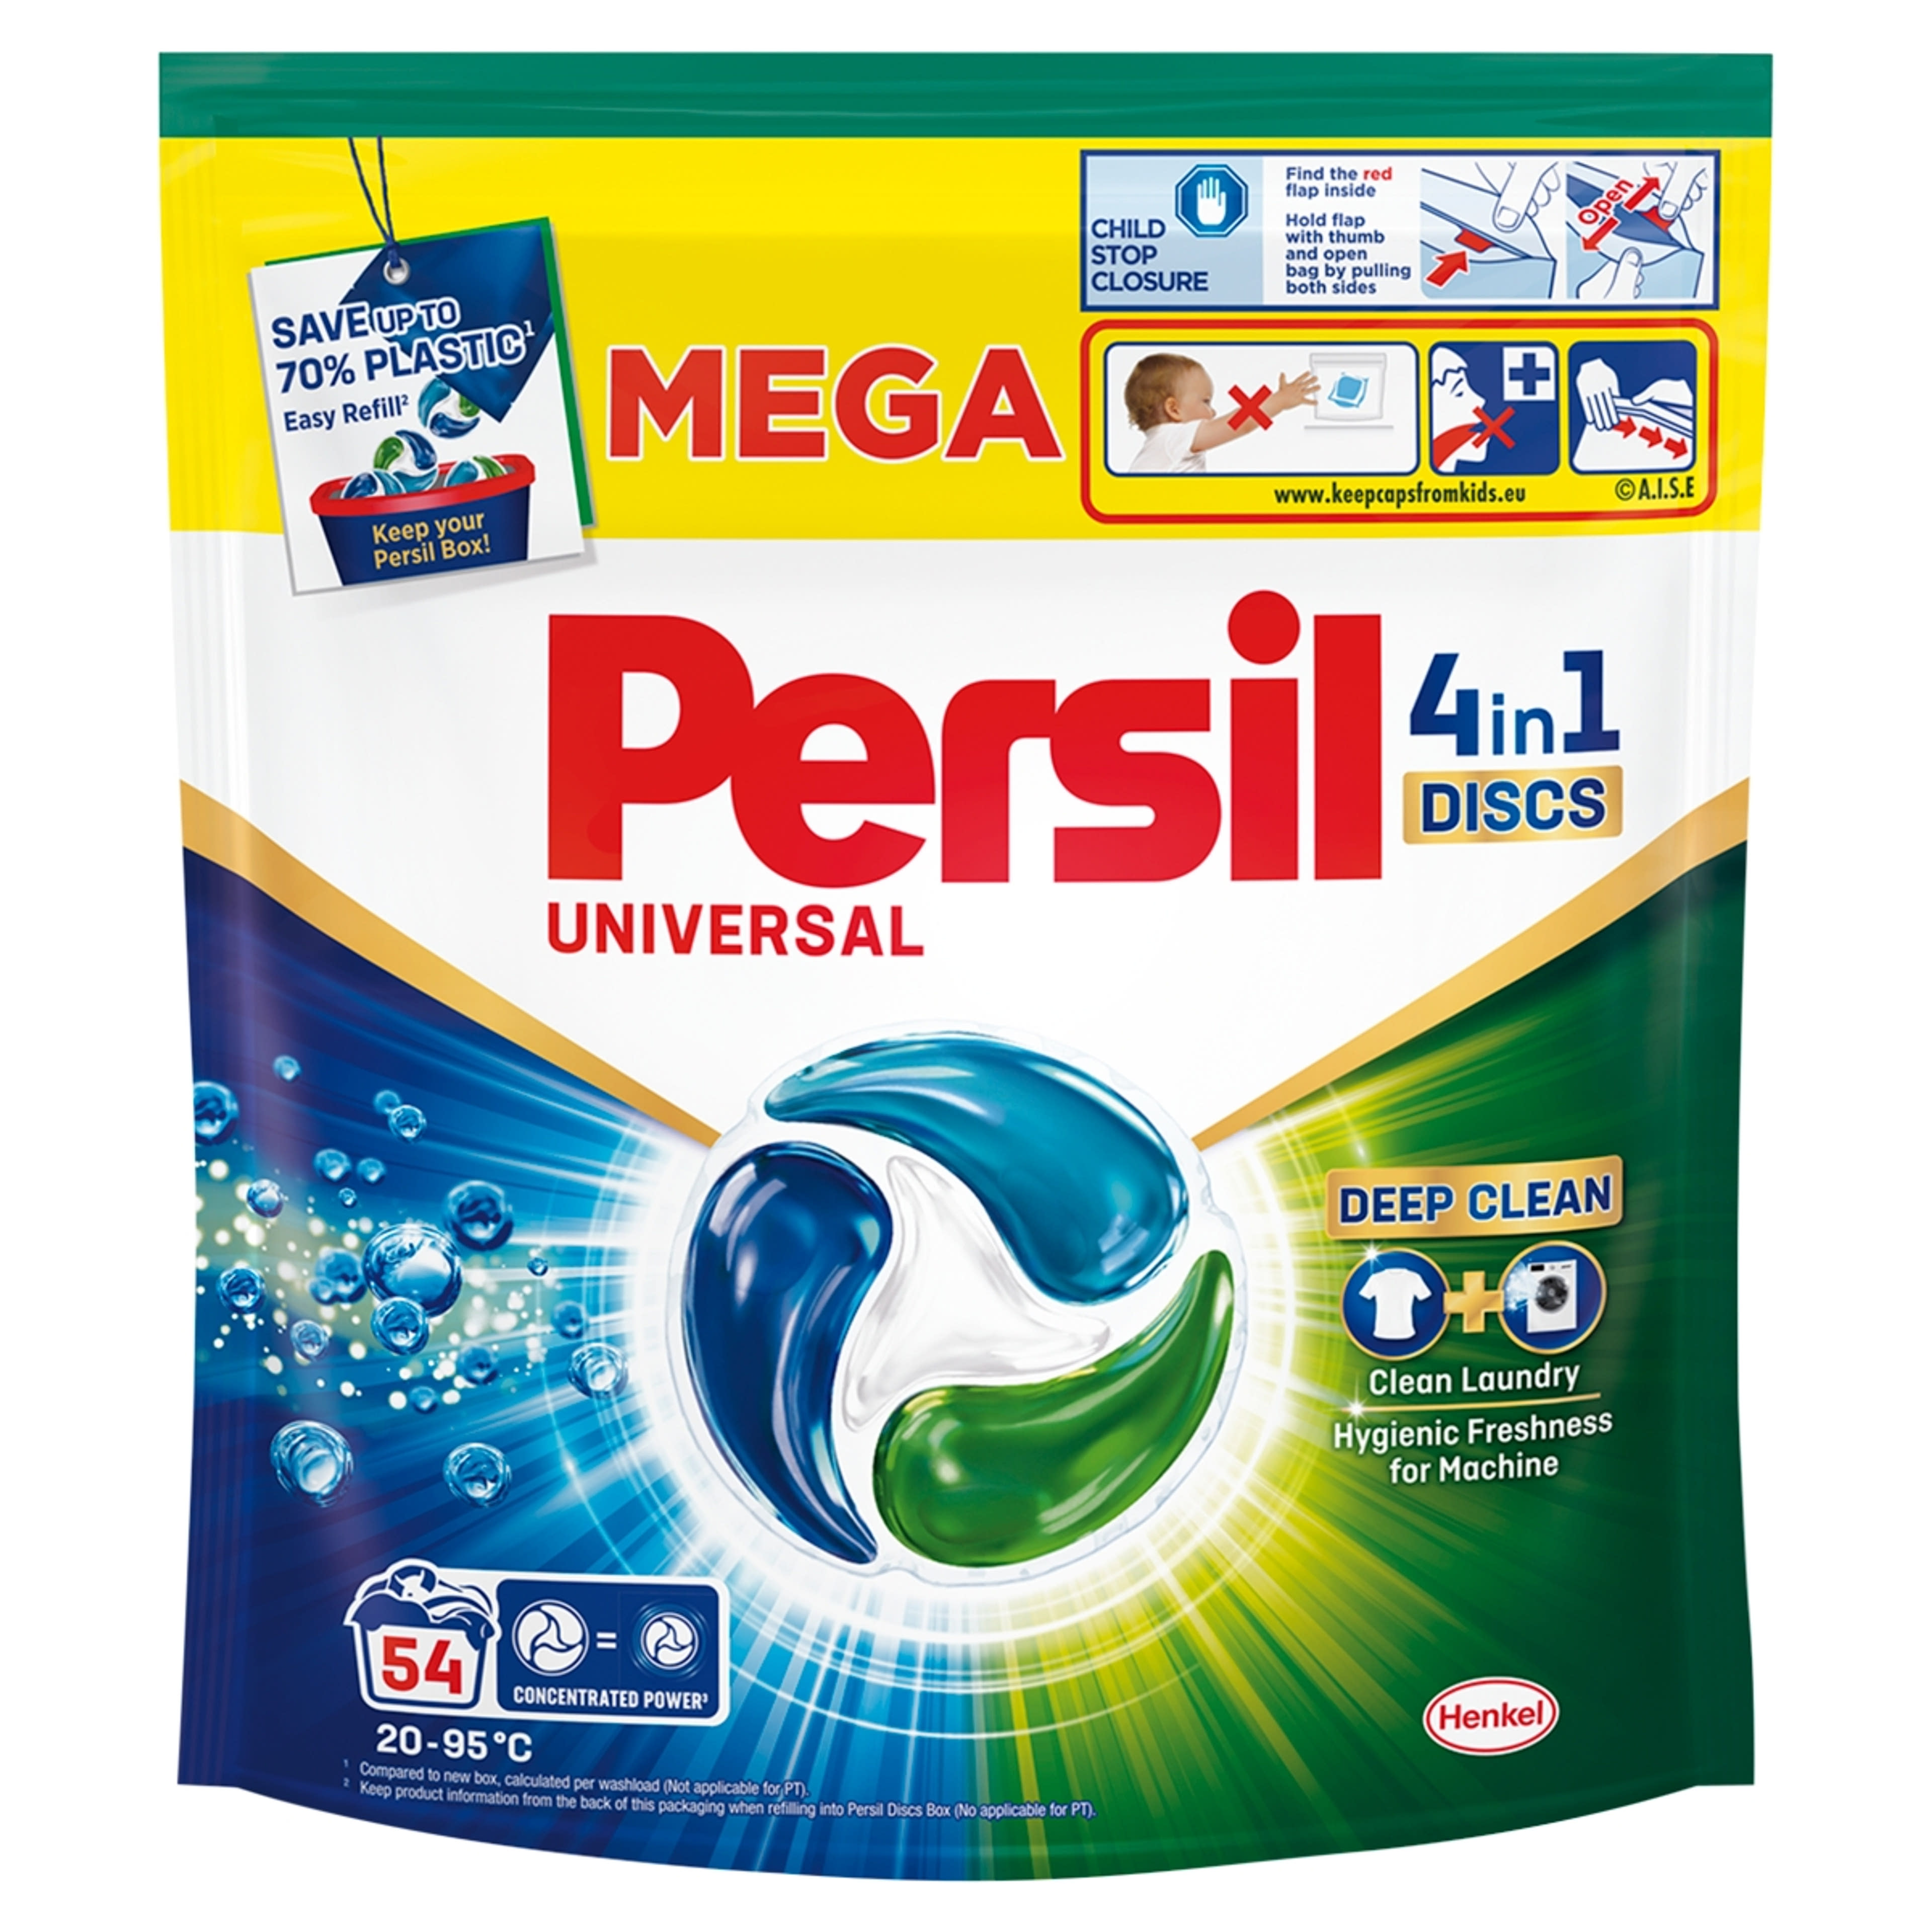 Persil Discs Universal mosókapszula 54 mosás - 54 db-1